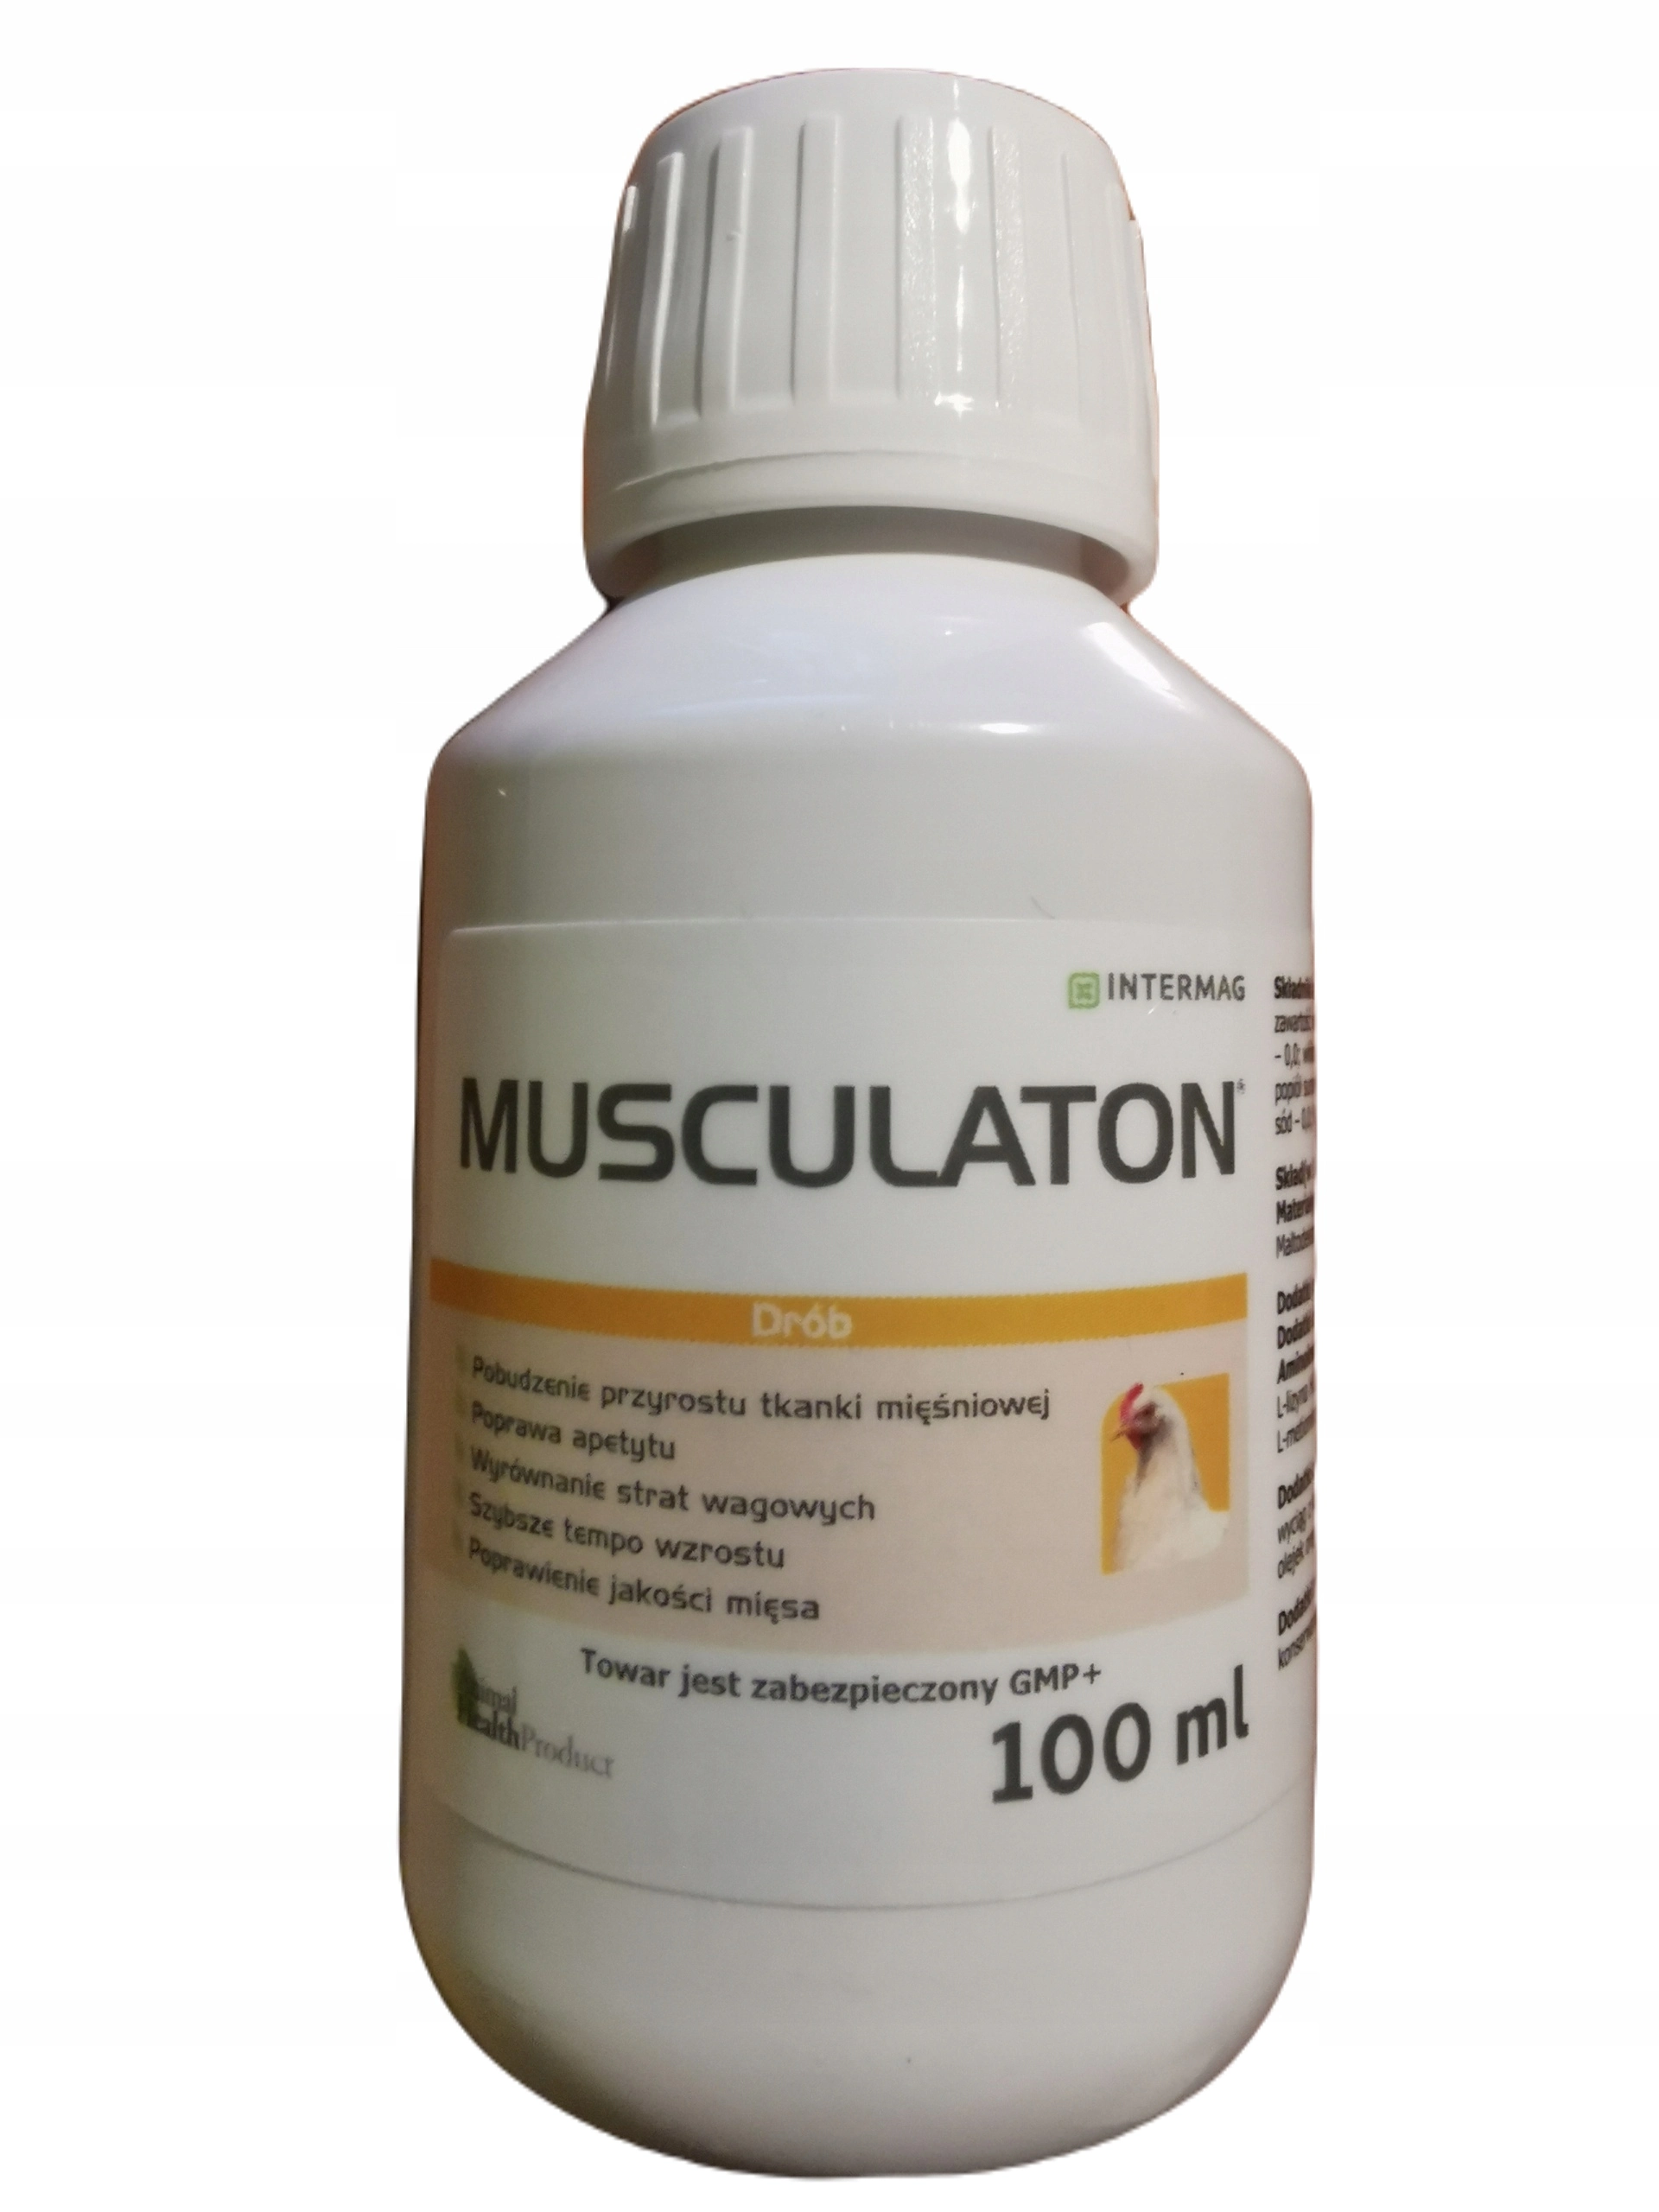 INTERMAG Musculaton – naturalne pobudzenie apetytu, tempa wzrostu i tkanki mięśniowej *mat pazowy*